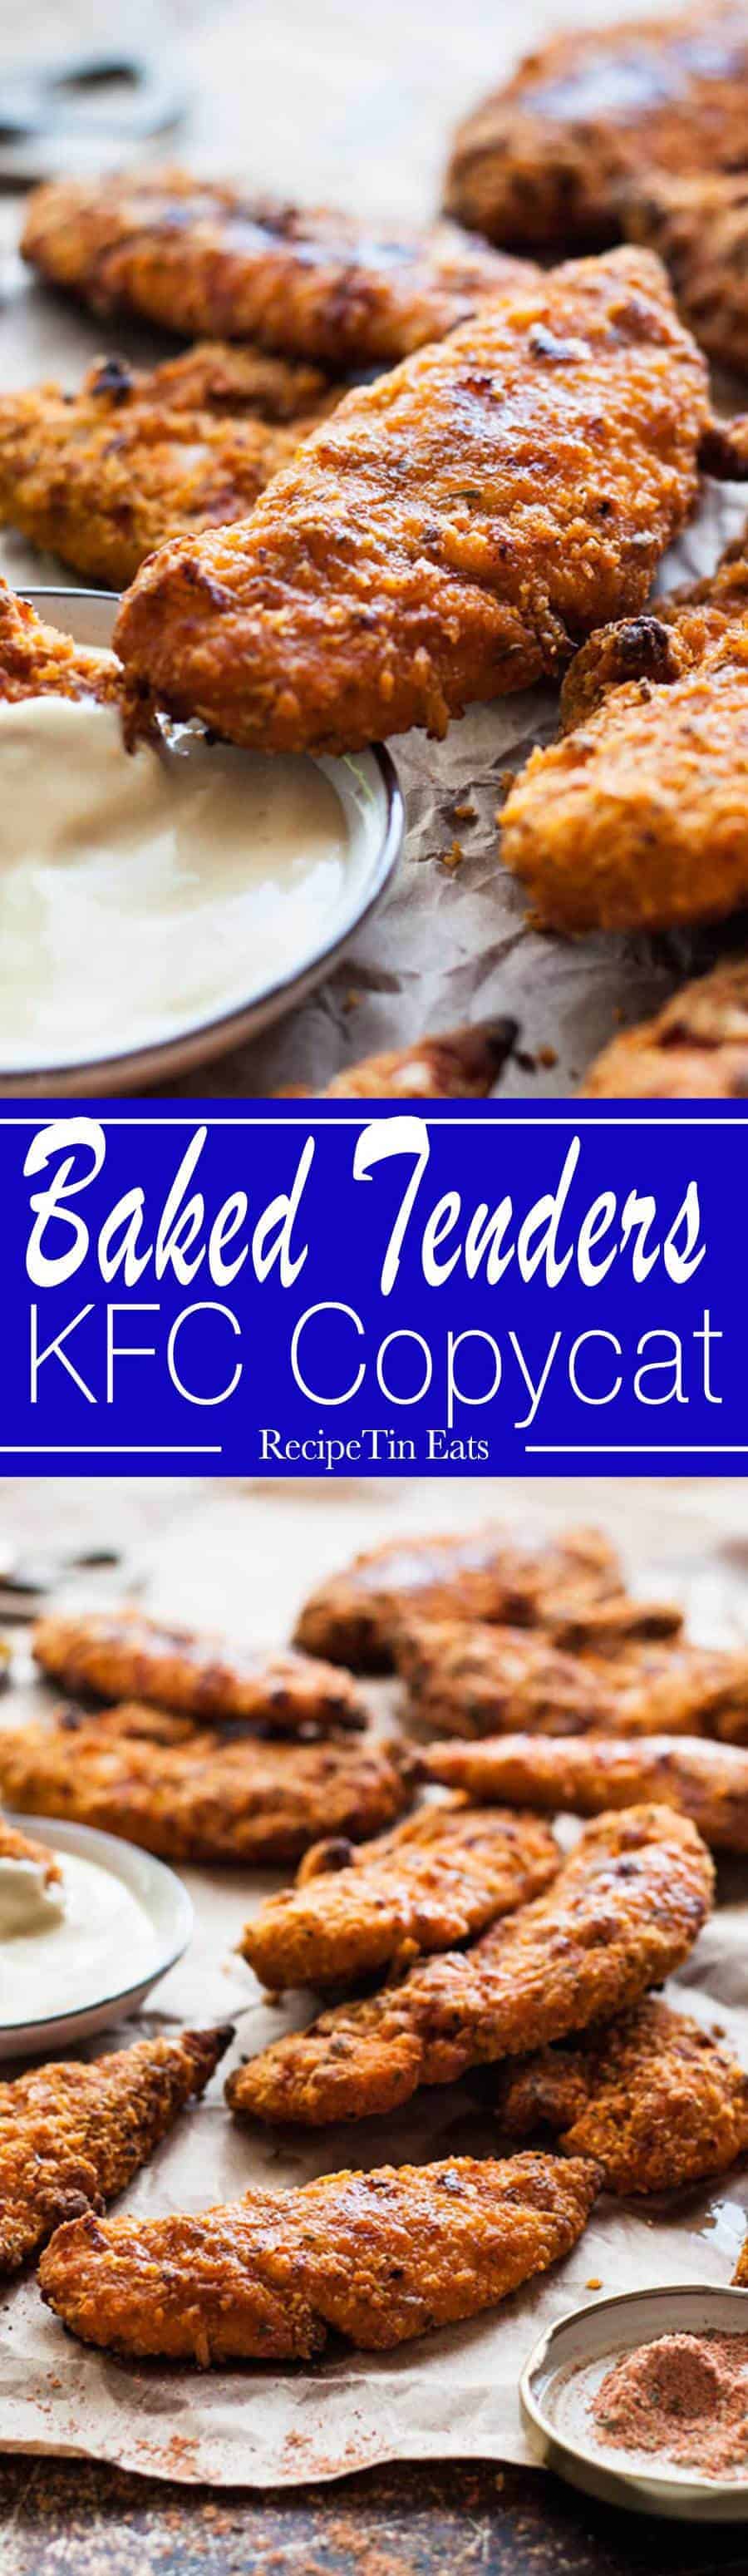 KFC Copycat Oven "Fried" Chicken Tenders 